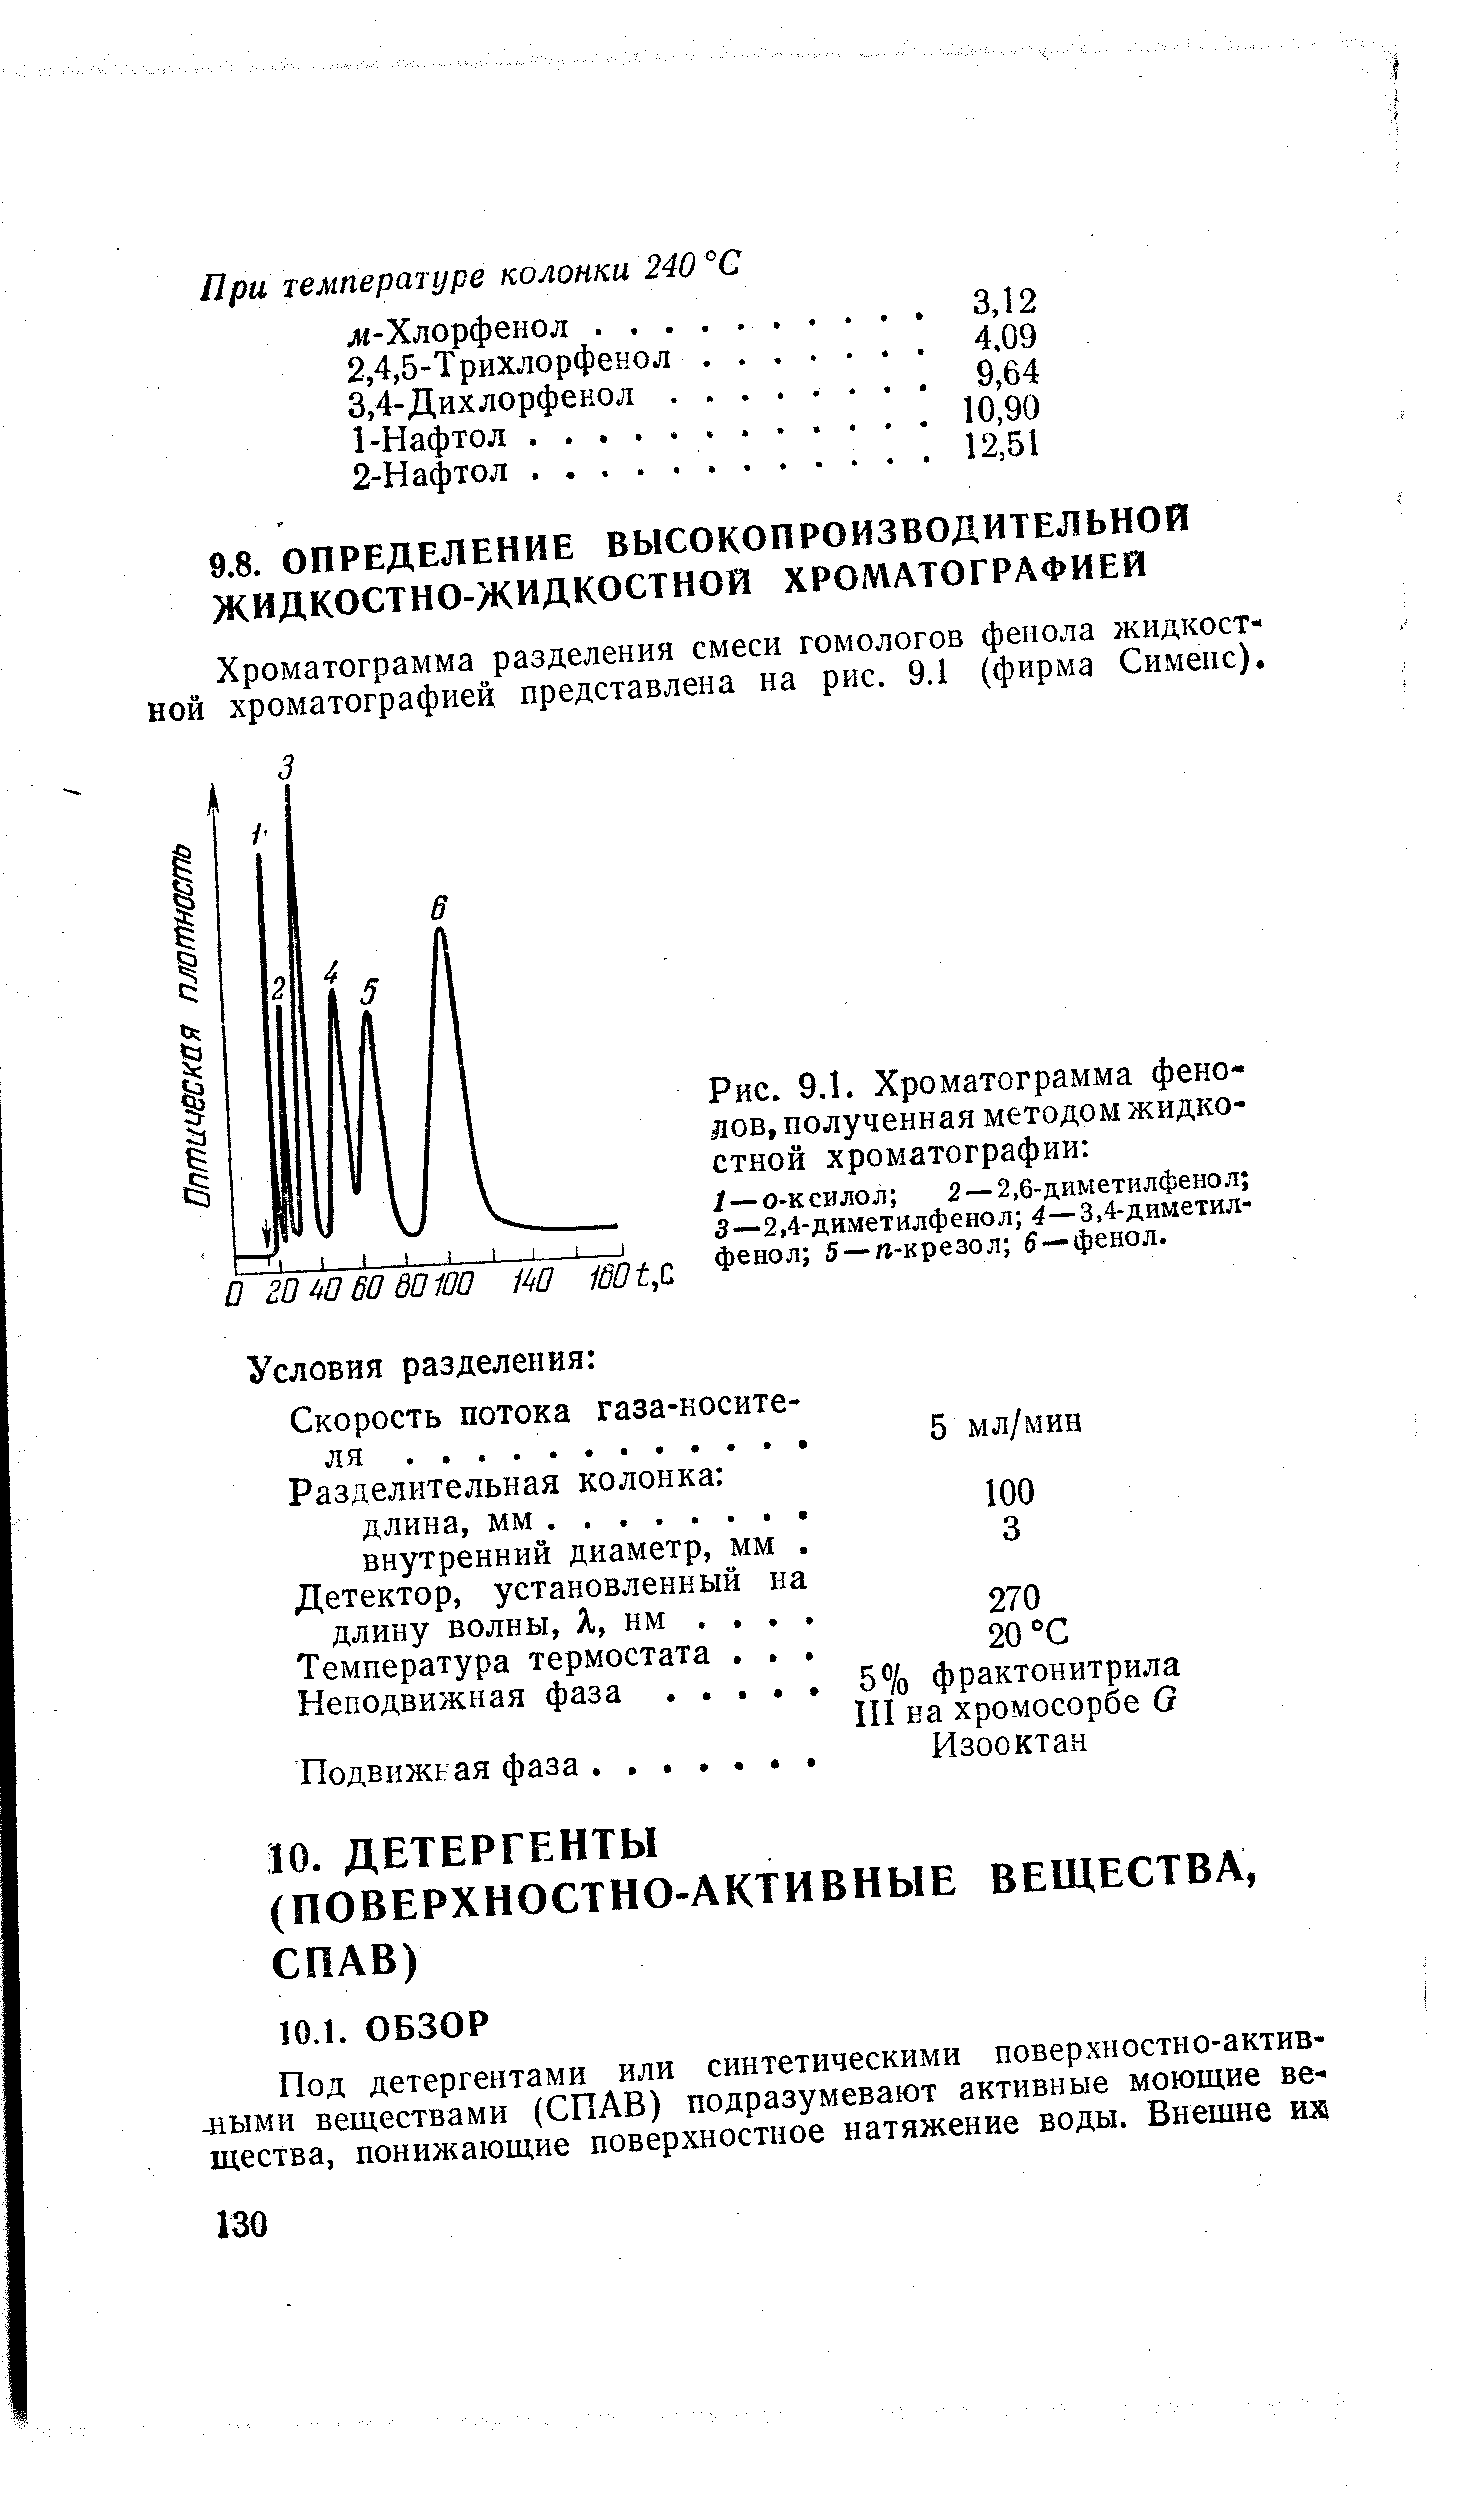 Хроматограмма разделения смеси гомологов фенола жидкостной хроматографией представлена на рис. 9.1 (фирма Сименс).